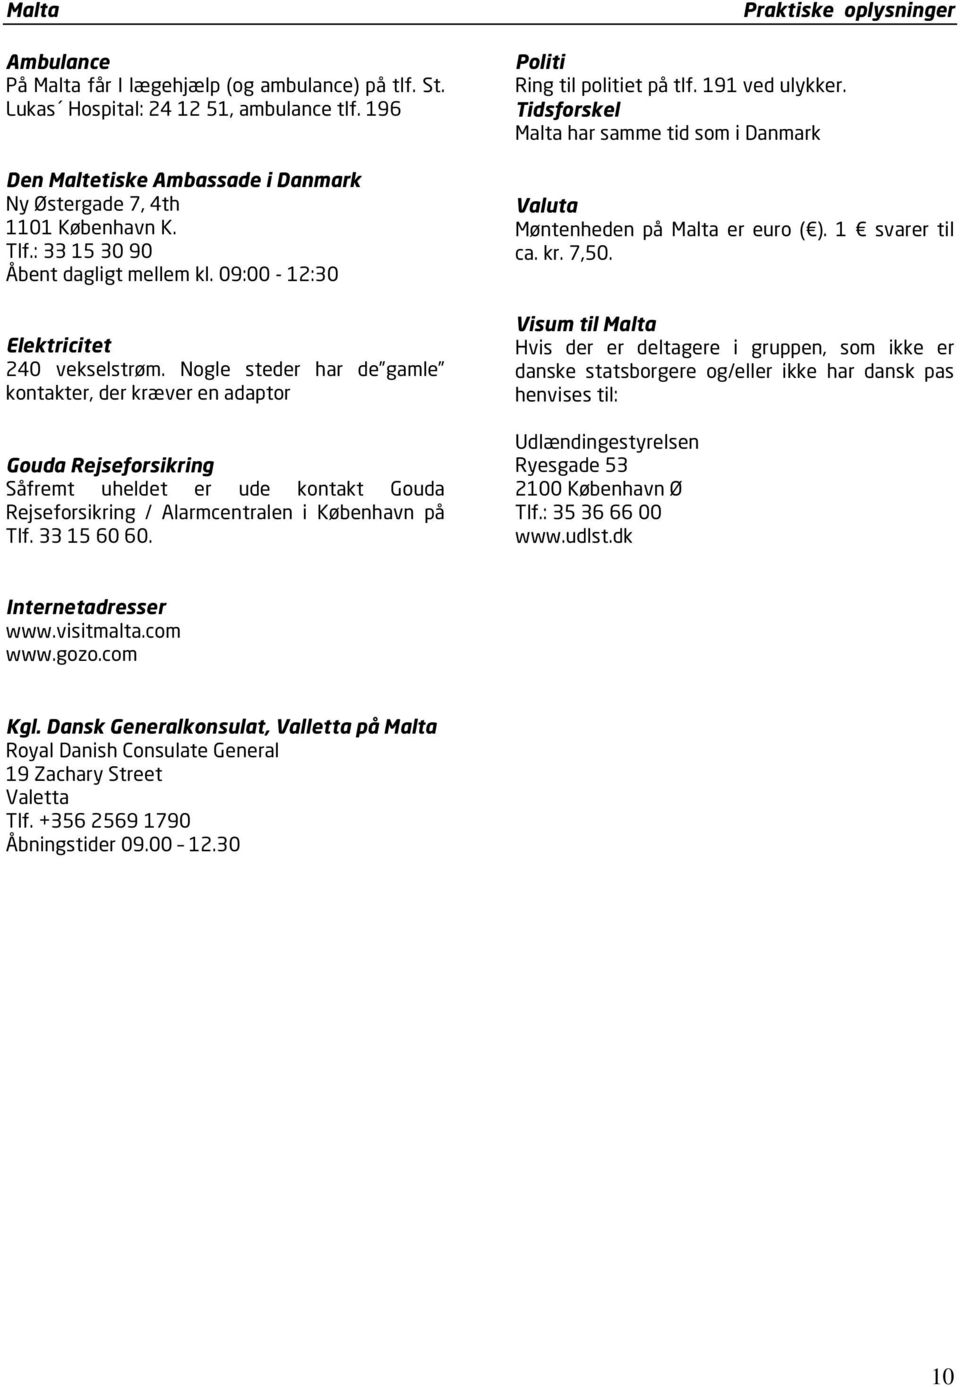 Nogle steder har de gamle kontakter, der kræver en adaptor Gouda Rejseforsikring Såfremt uheldet er ude kontakt Gouda Rejseforsikring / Alarmcentralen i København på Tlf. 33 15 60 60.